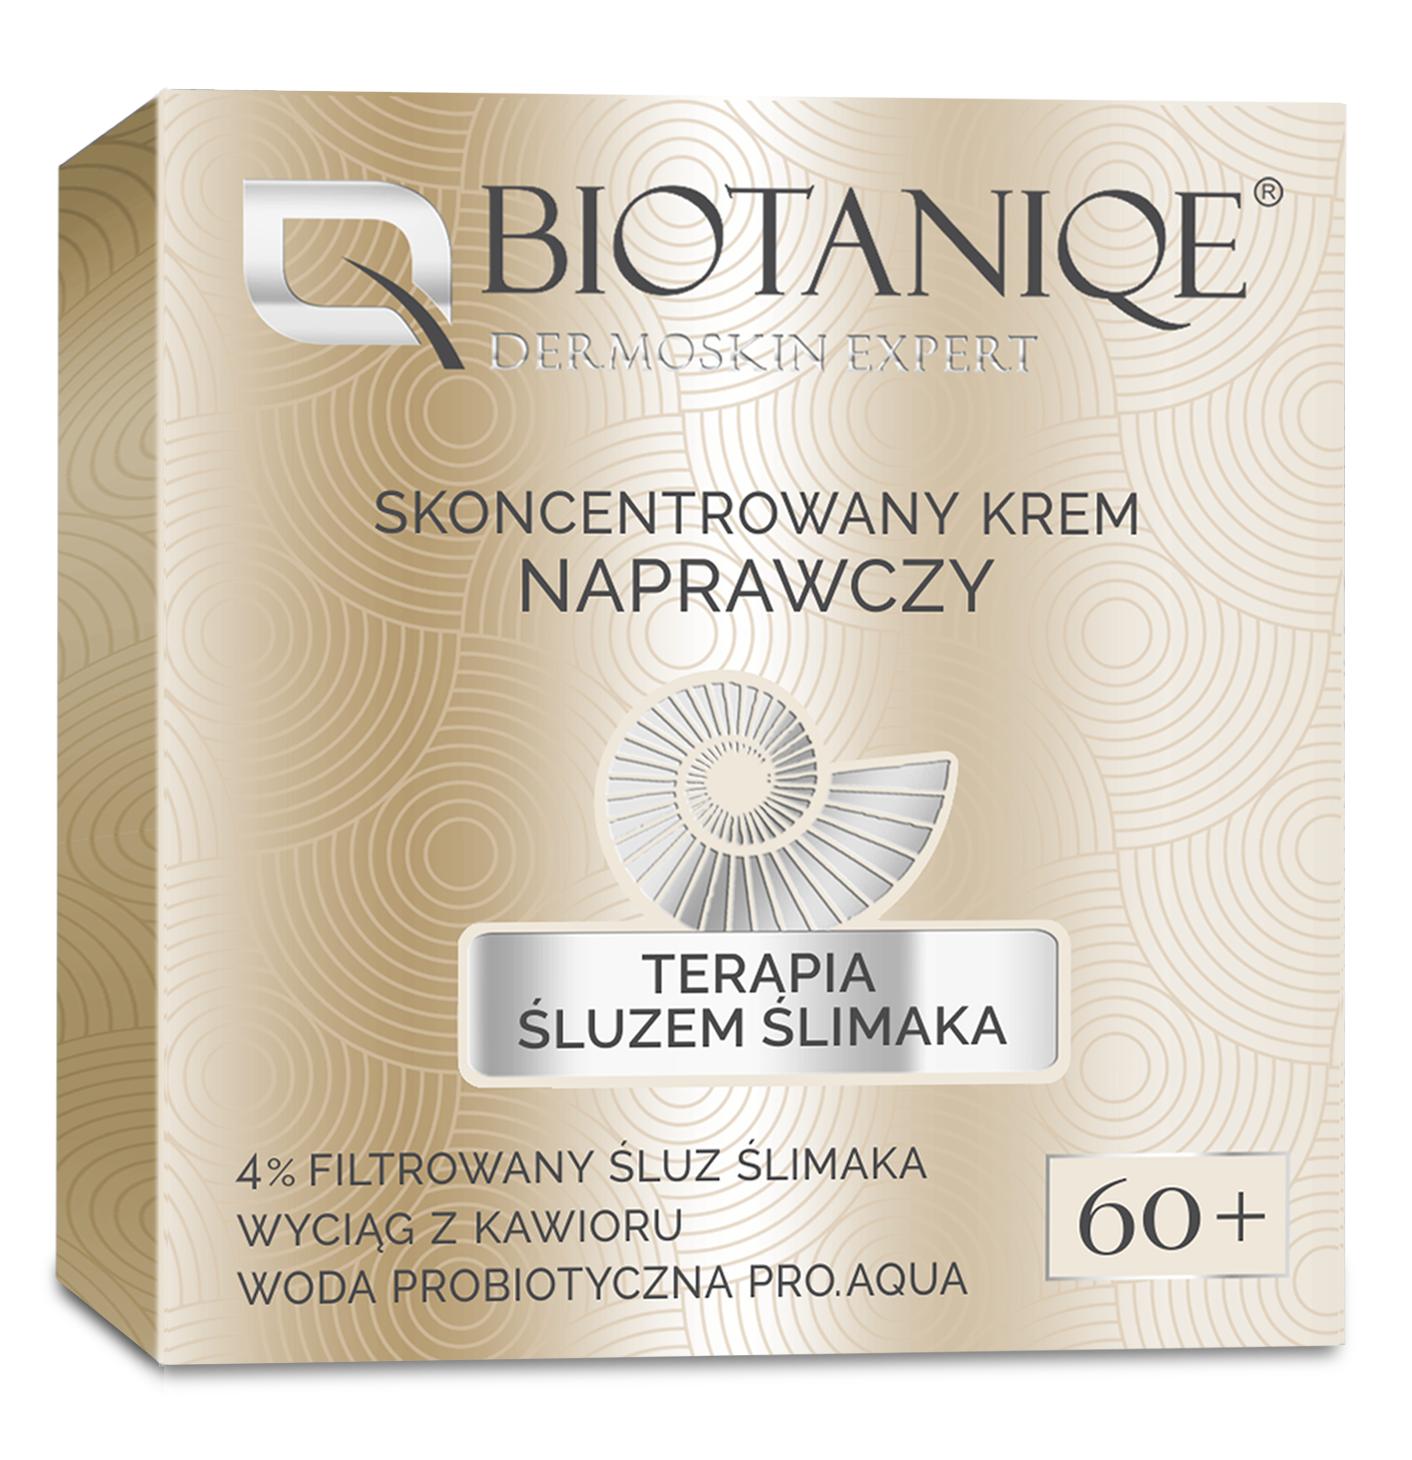 Biotaniqe - Terapia Śluzem Ślimaka, Skoncentrowany Krem Naprawczy 60+ - 50 ml